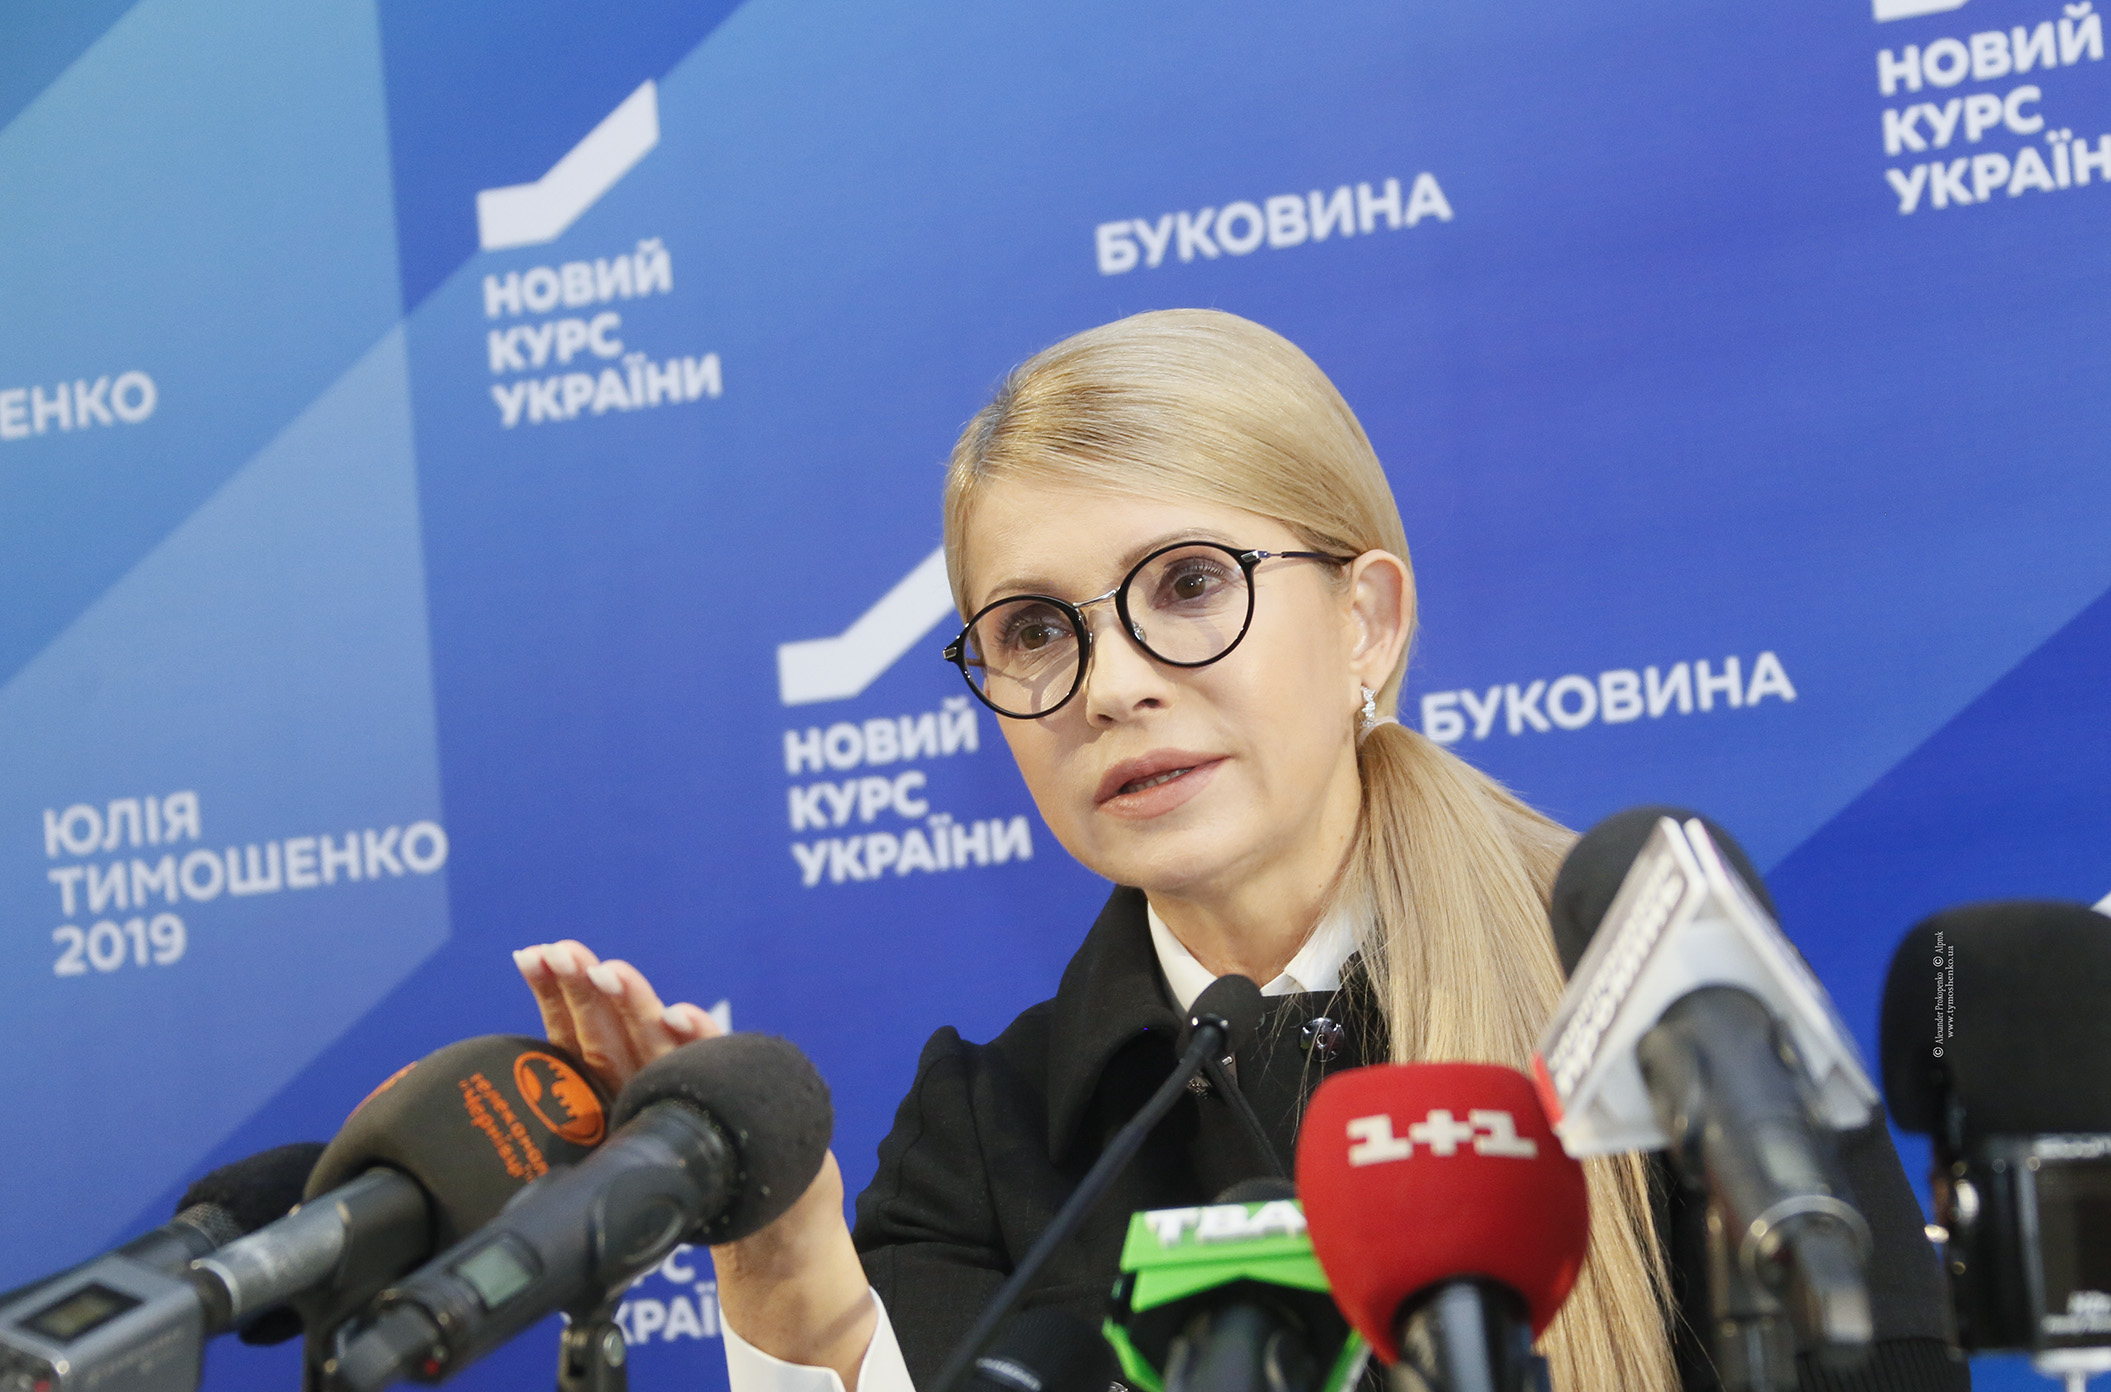 'В Україні створено корупційну модель, яка обслуговує державний борг за 13% річних для викачки фінансових ресурсів країни', - Тимошенко